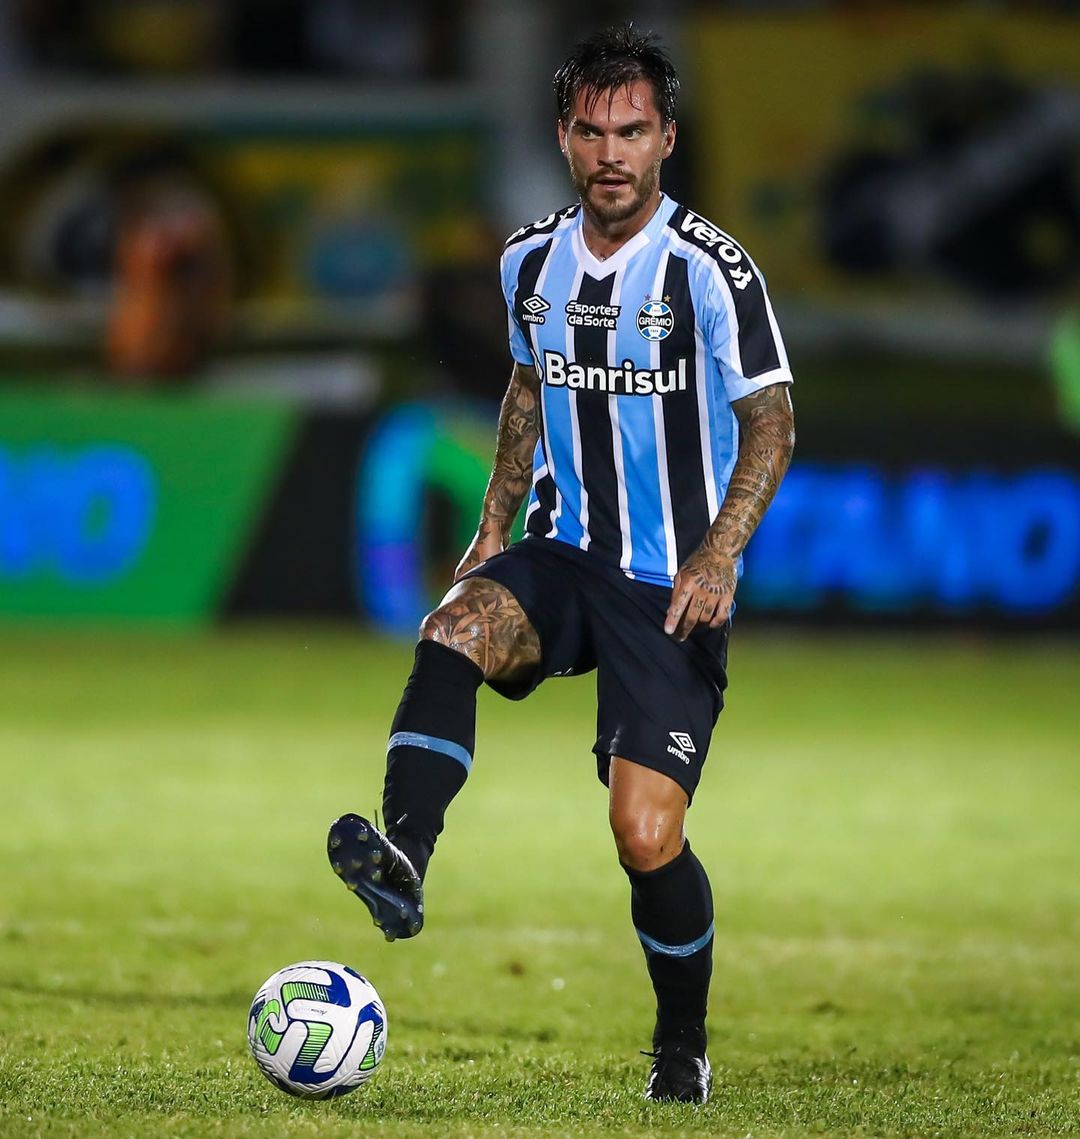 Chefe de esquema de apostas cita contato com jogadores do Botafogo